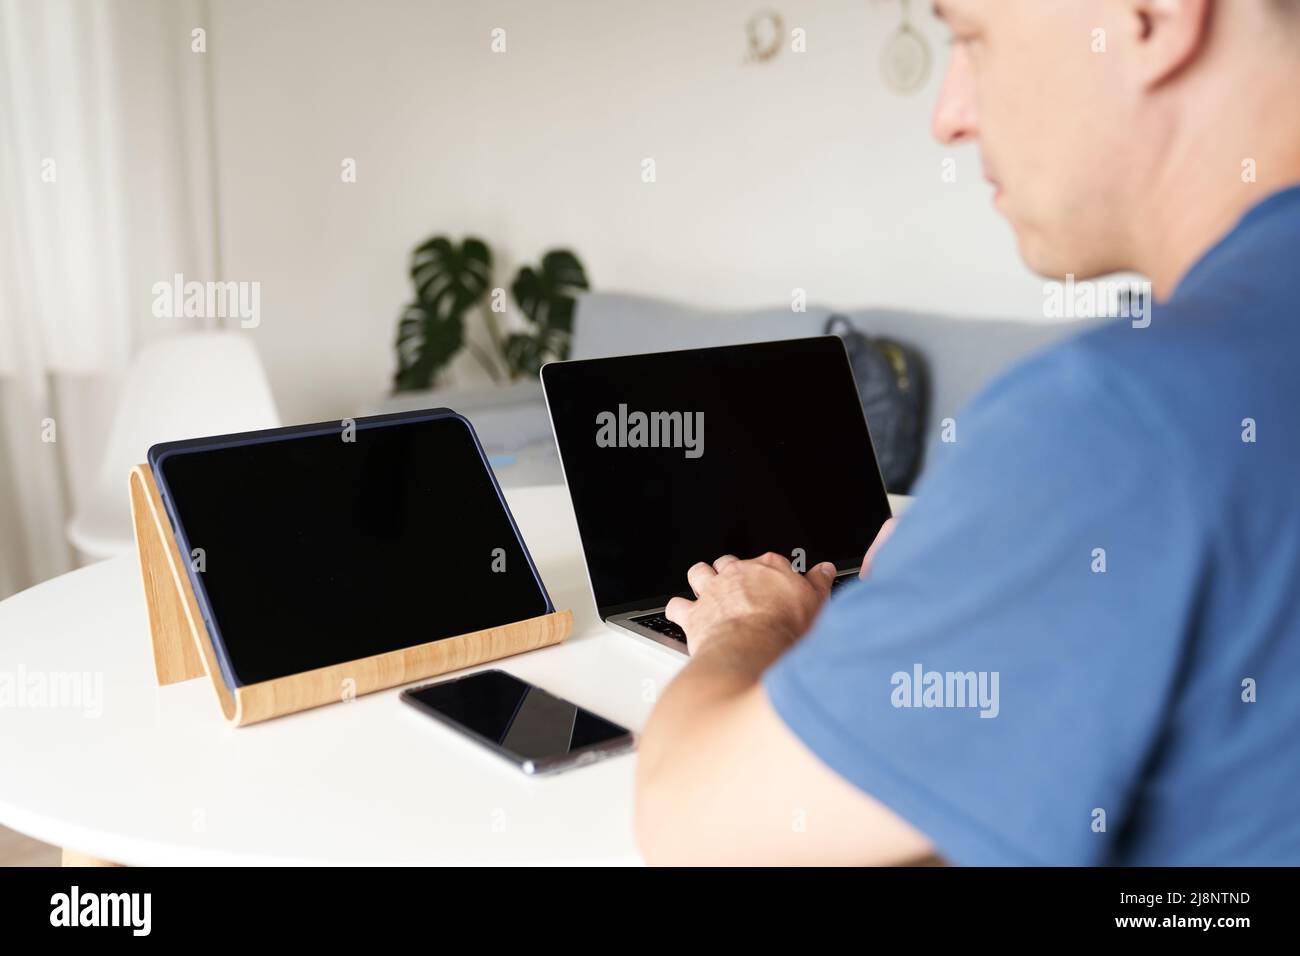 Eine seriöse Person, die zu Hause aus der Ferne arbeitet. Ein Mann gibt Informationen in einen Laptop ein. Layout-Konzept, Design. Schwarze Bildschirme auf Laptops und Tablets. Layout für Ihr Design. Hochwertige Fotos Stockfoto